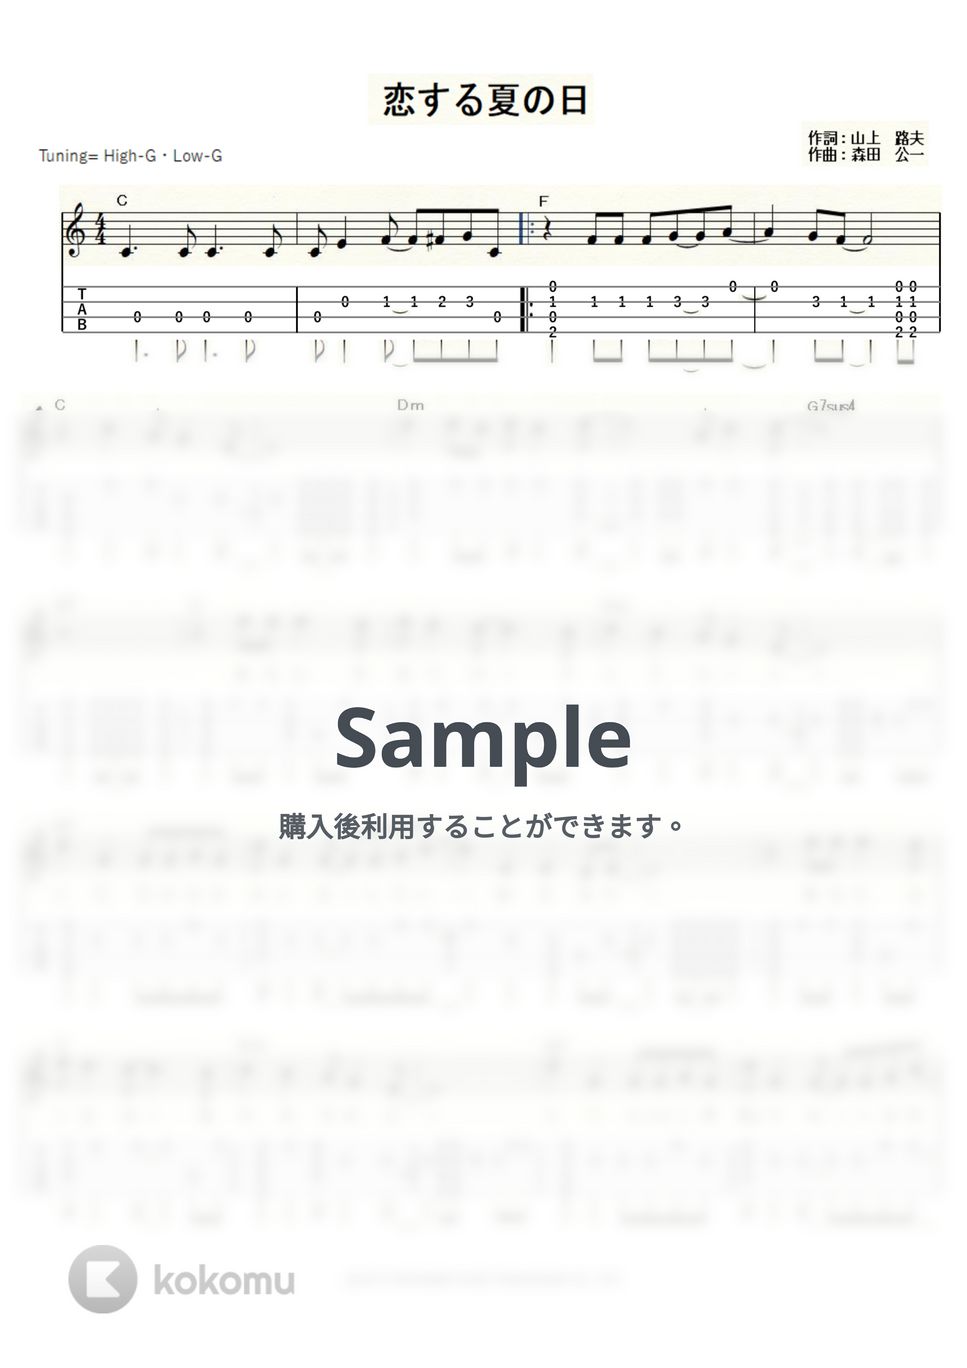 天地真理 - 恋する夏の日 (ｳｸﾚﾚｿﾛ/High-G・Low-G/中級) by ukulelepapa